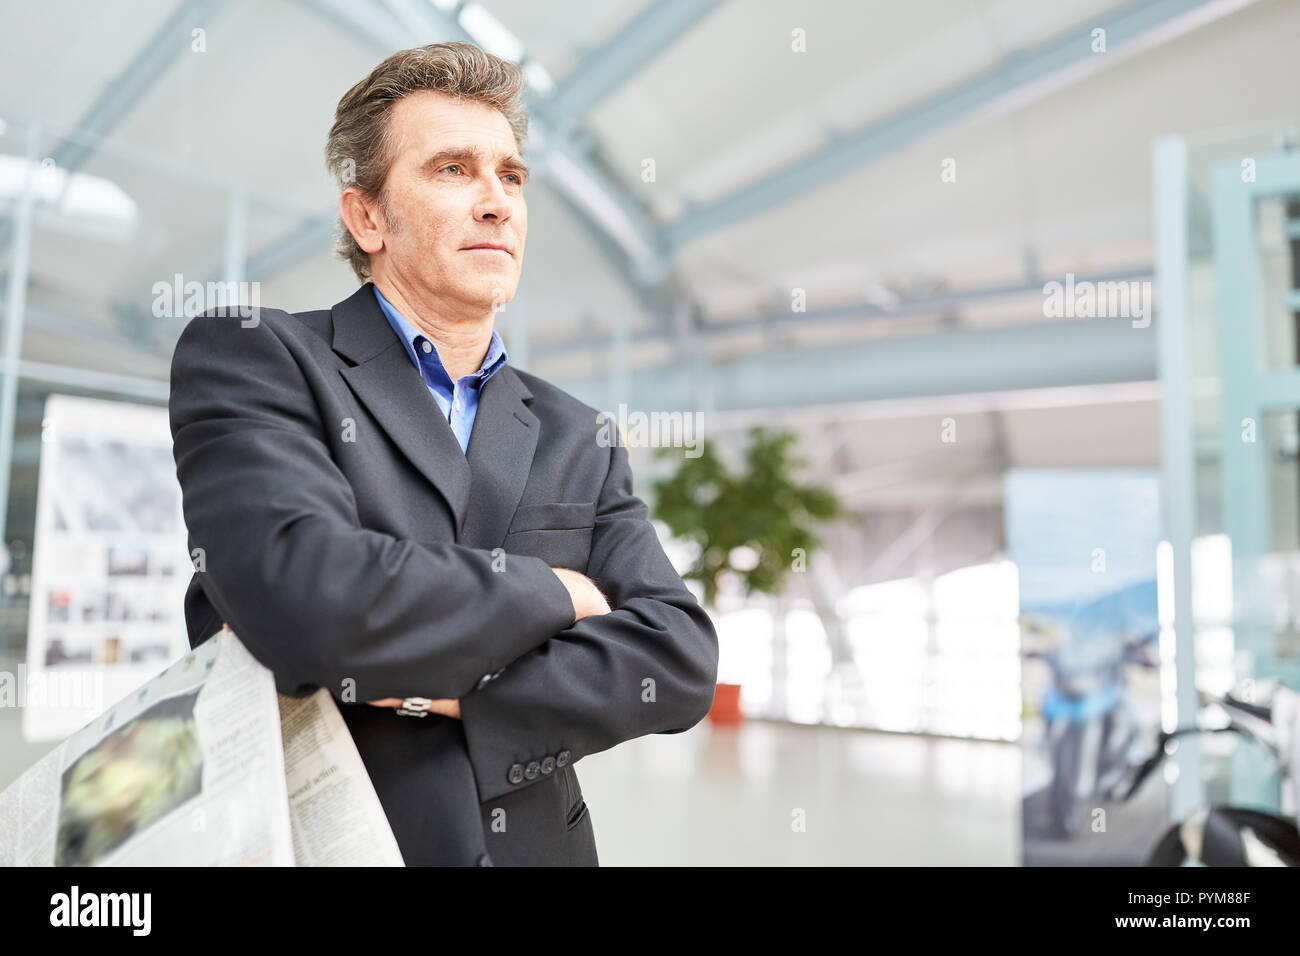 El hombre como un manager espera con los brazos cruzados en la terminal del aeropuerto o estación de tren Foto de stock